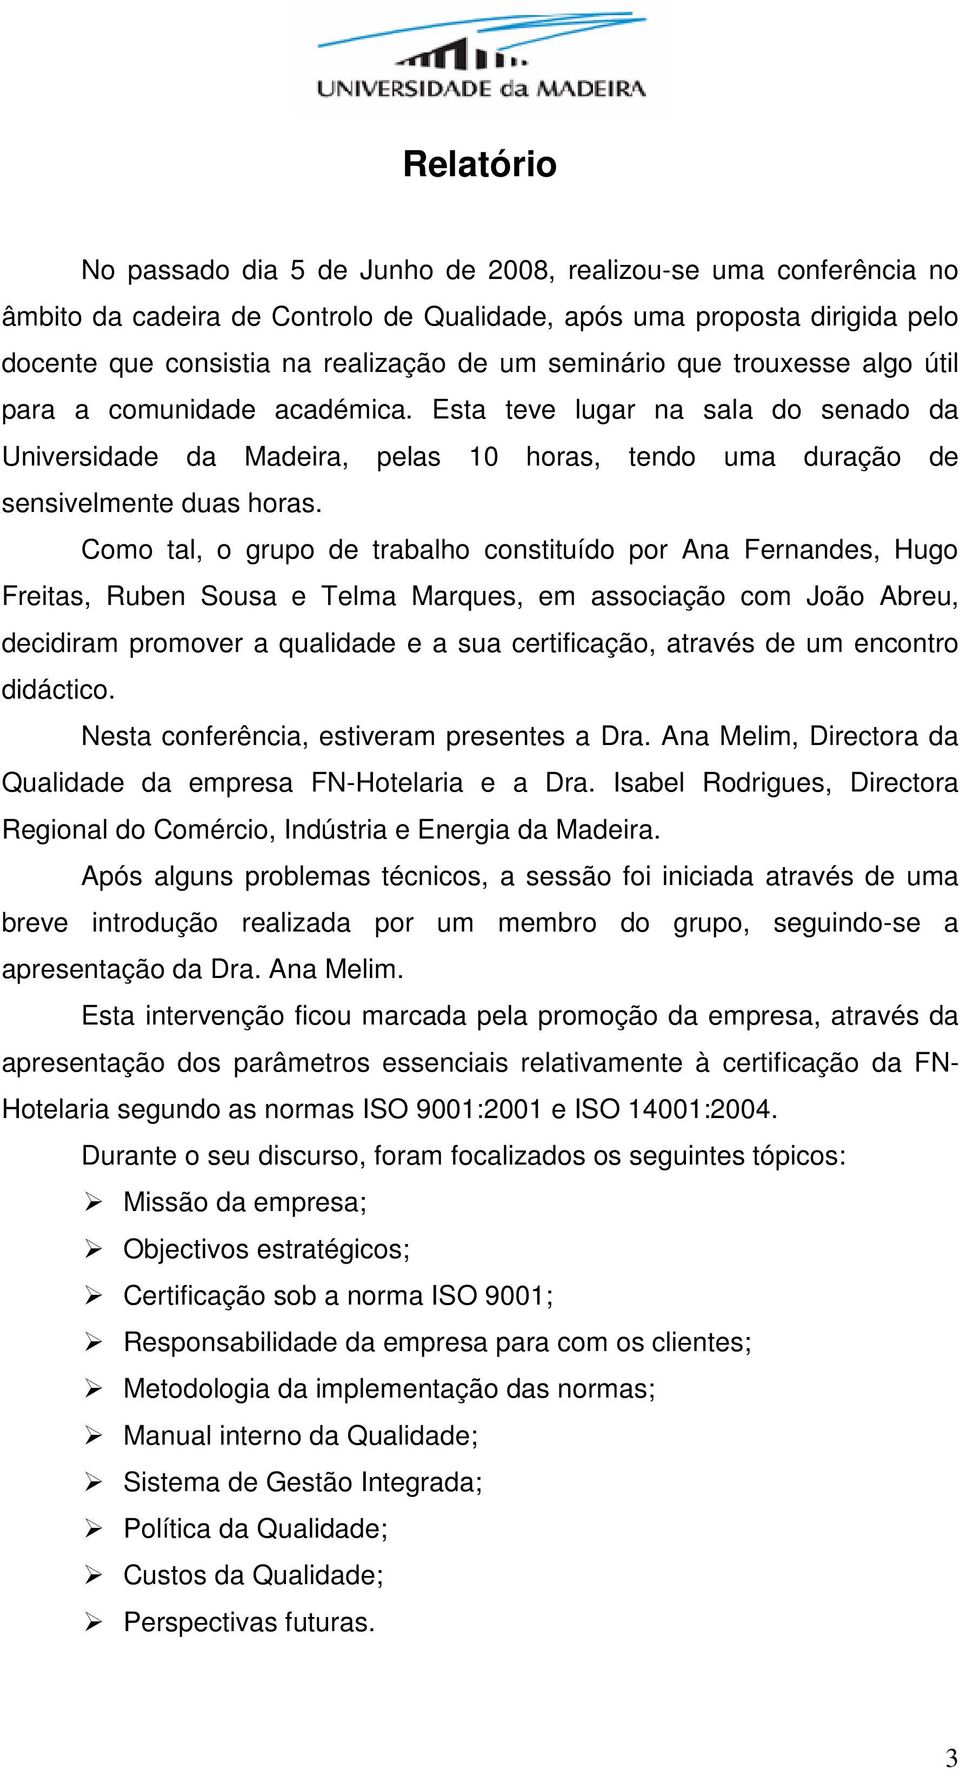 Como tal, o grupo de trabalho constituído por Ana Fernandes, Hugo Freitas, Ruben Sousa e Telma Marques, em associação com João Abreu, decidiram promover a qualidade e a sua certificação, através de